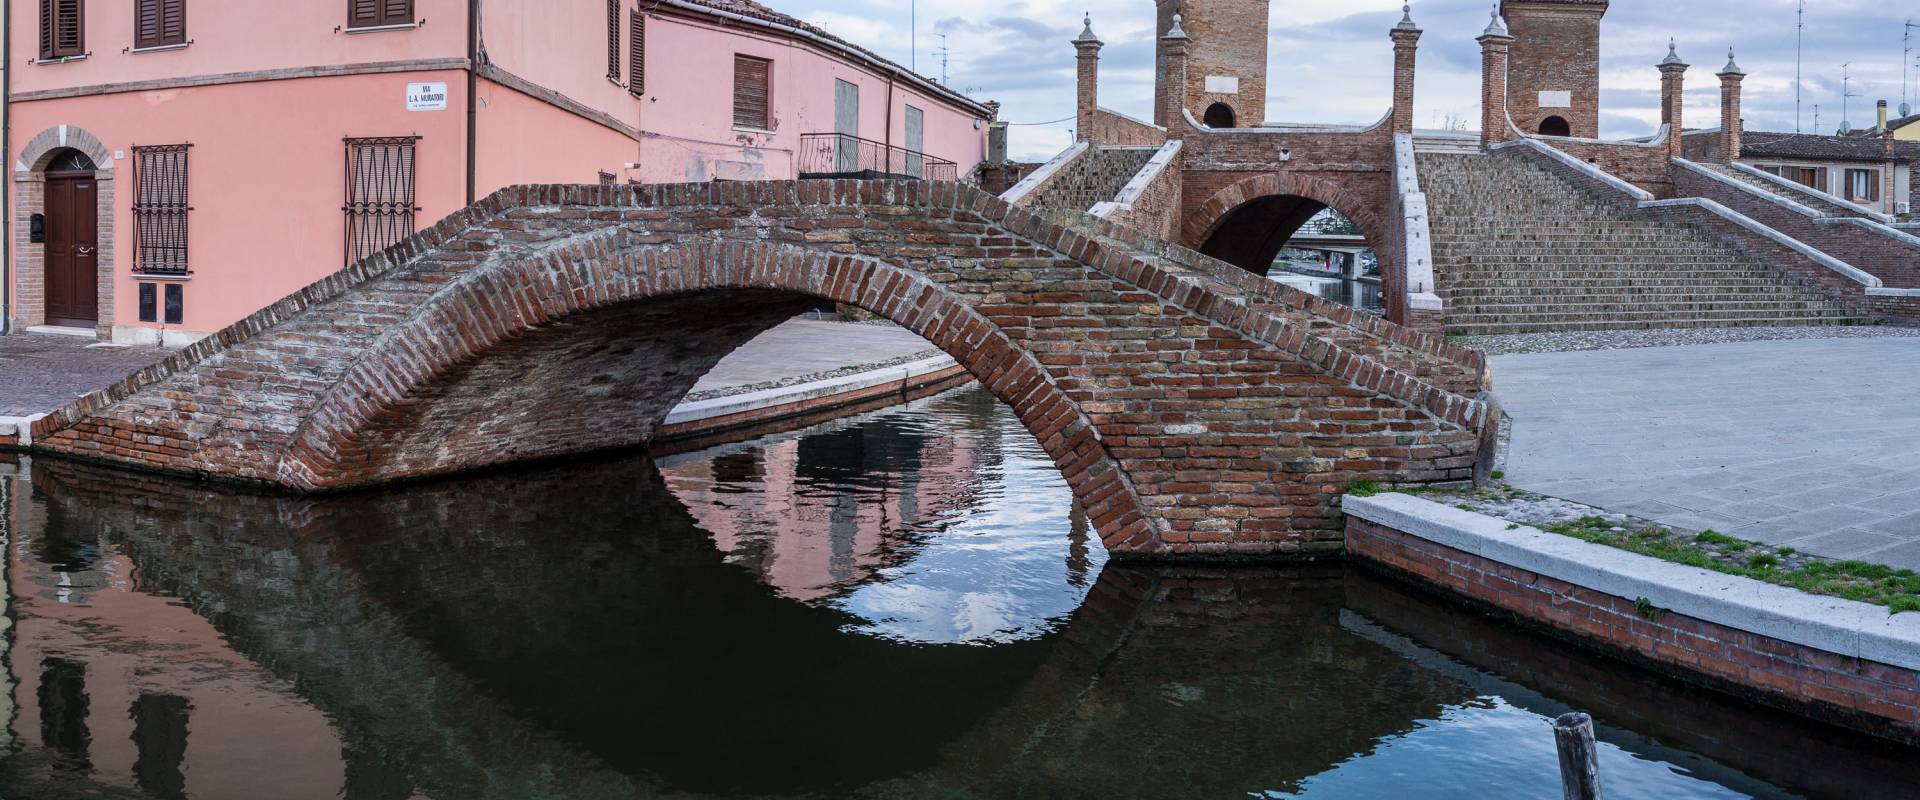 Trepponti - Comacchio - photo by Vanni Lazzari